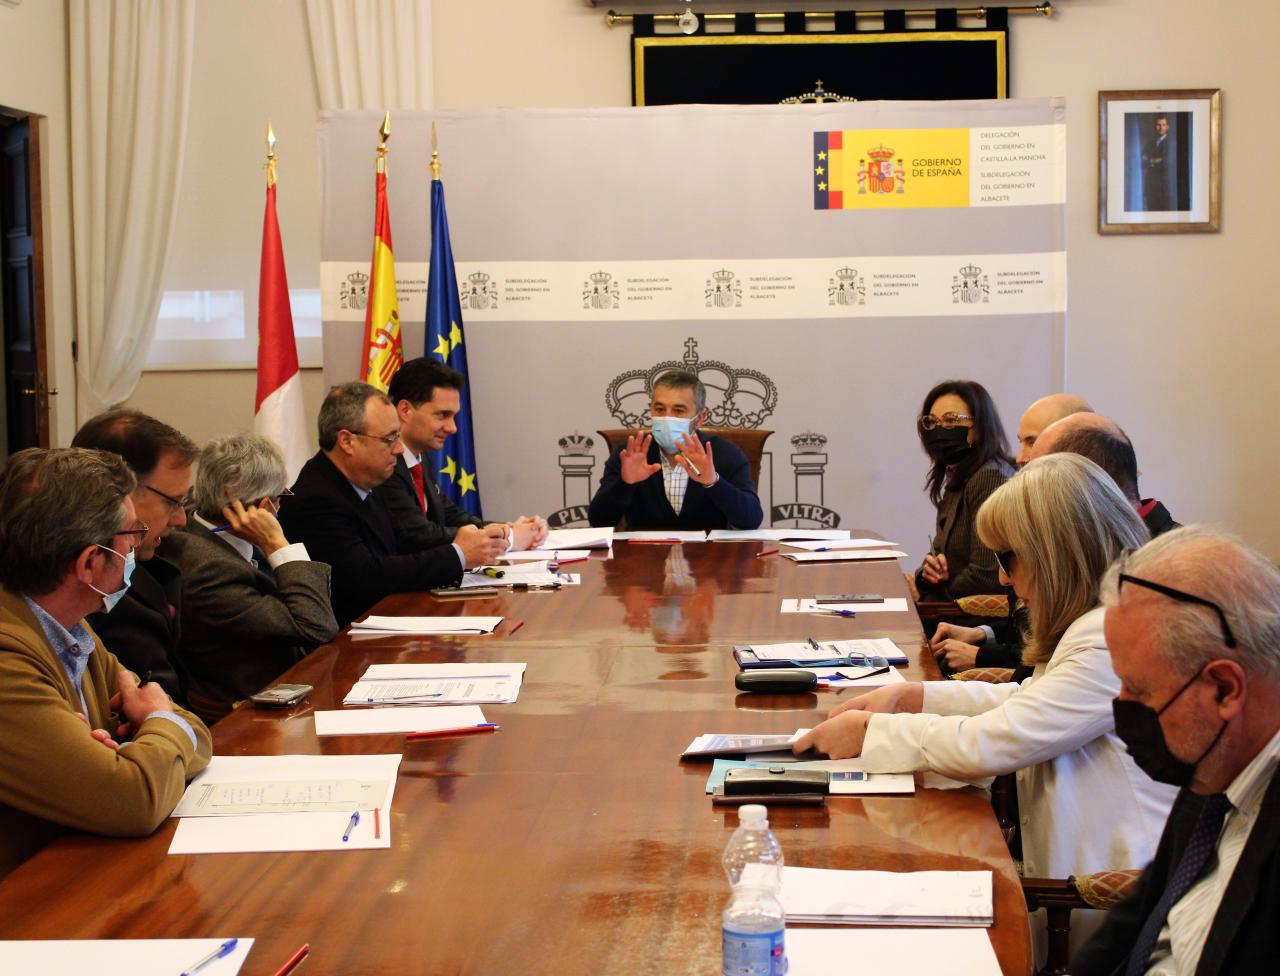 El subdelegado del Gobierno de España en la provincia de Albacete subraya la necesidad de un tratamiento escrupuloso en la atención a los ciudadanos cuando se dirijan a la Administración